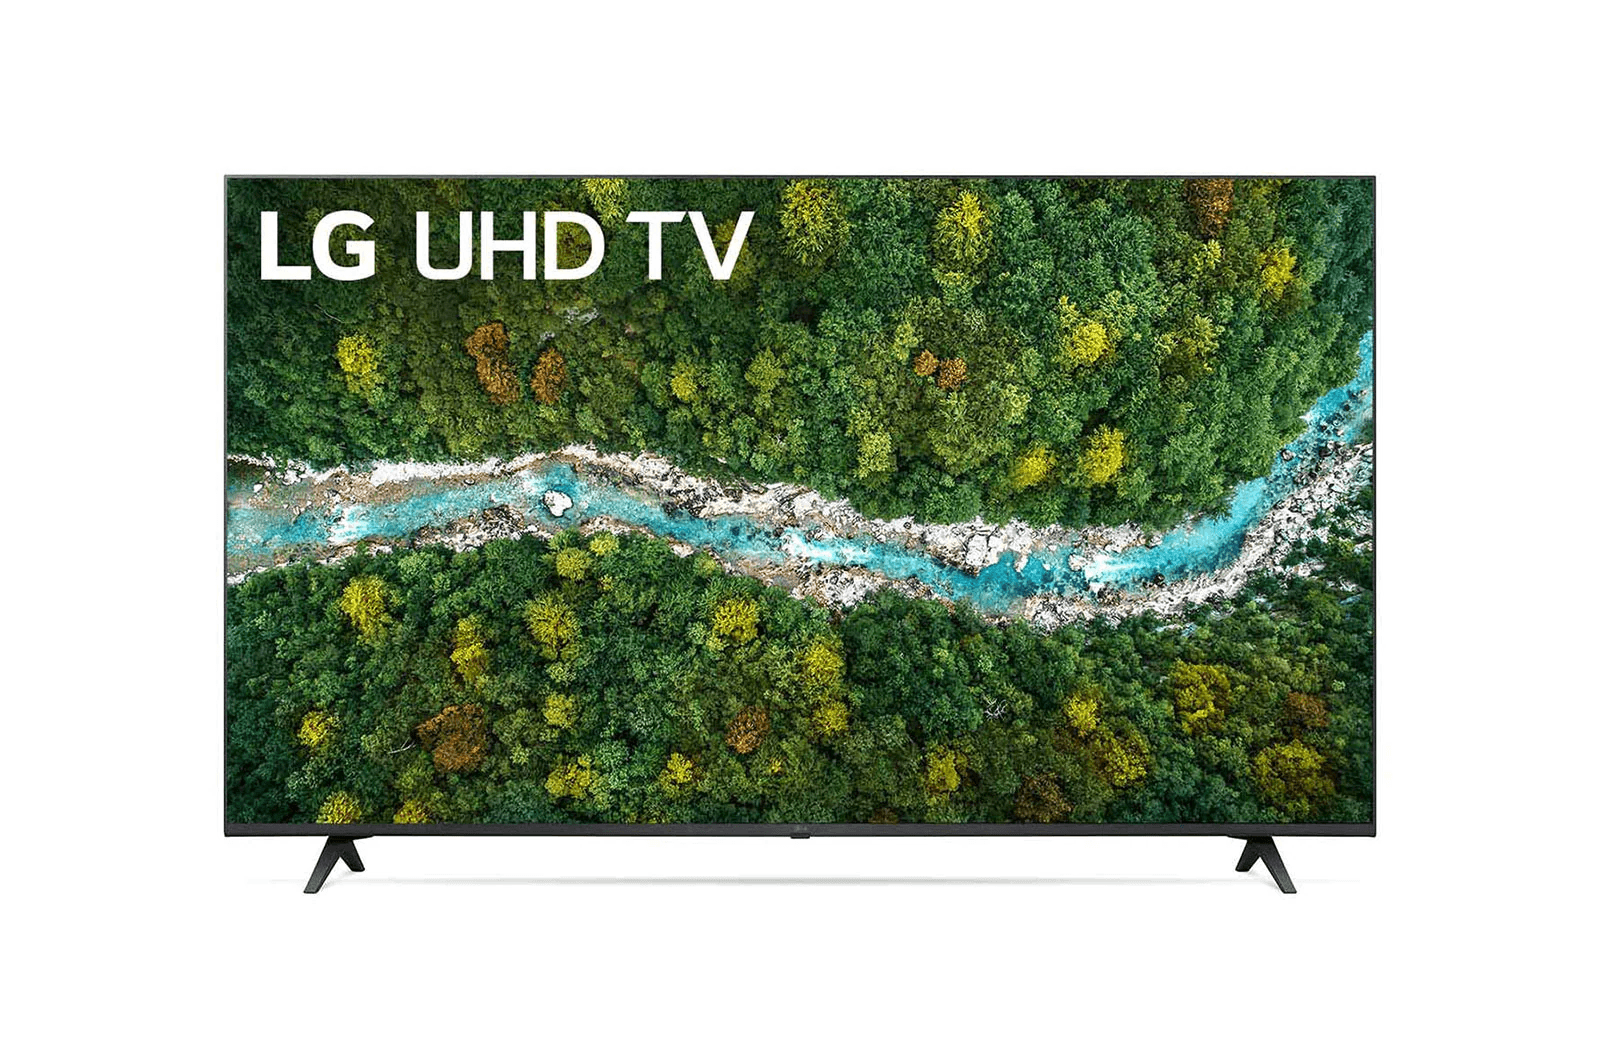 LG - LED TV 65UP7750PTB | 1 - Login Megastore